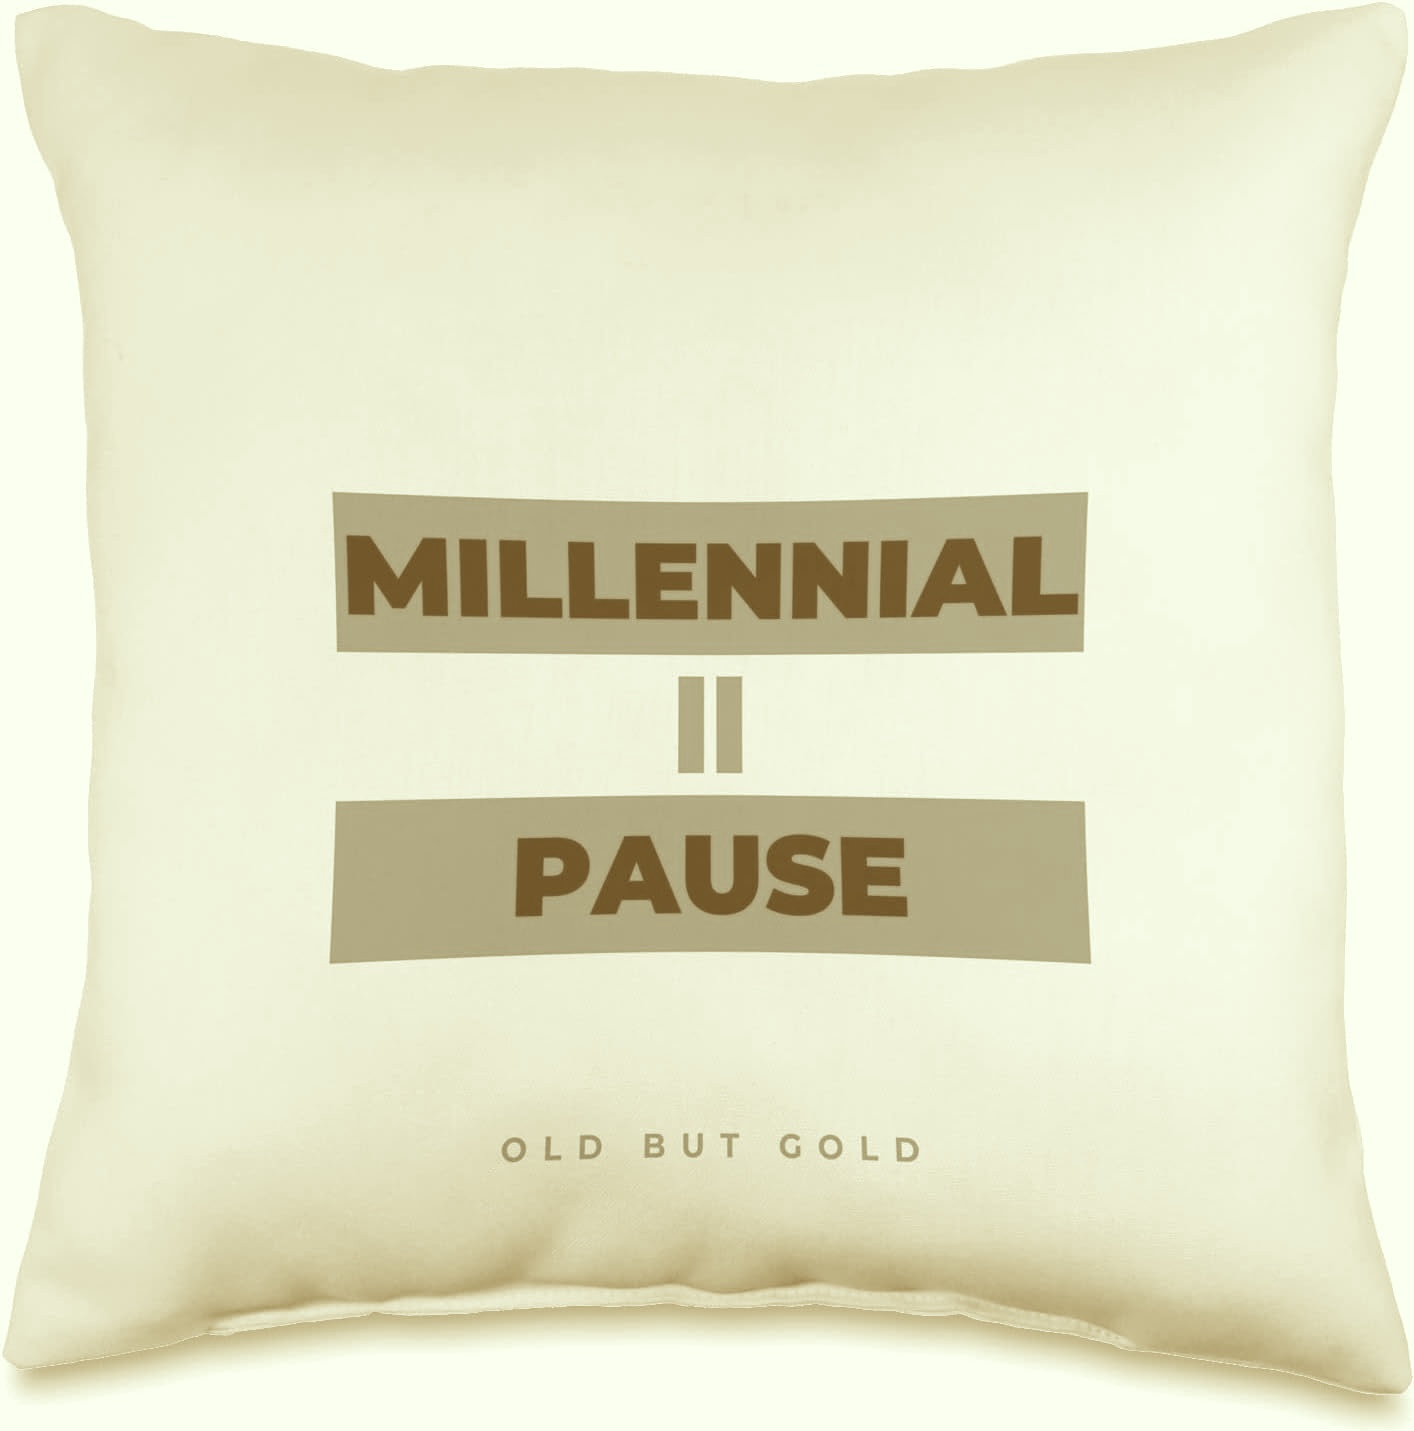 La Millennial Pause: perché i nati negli anni ’80 fanno quel gesto sui social?